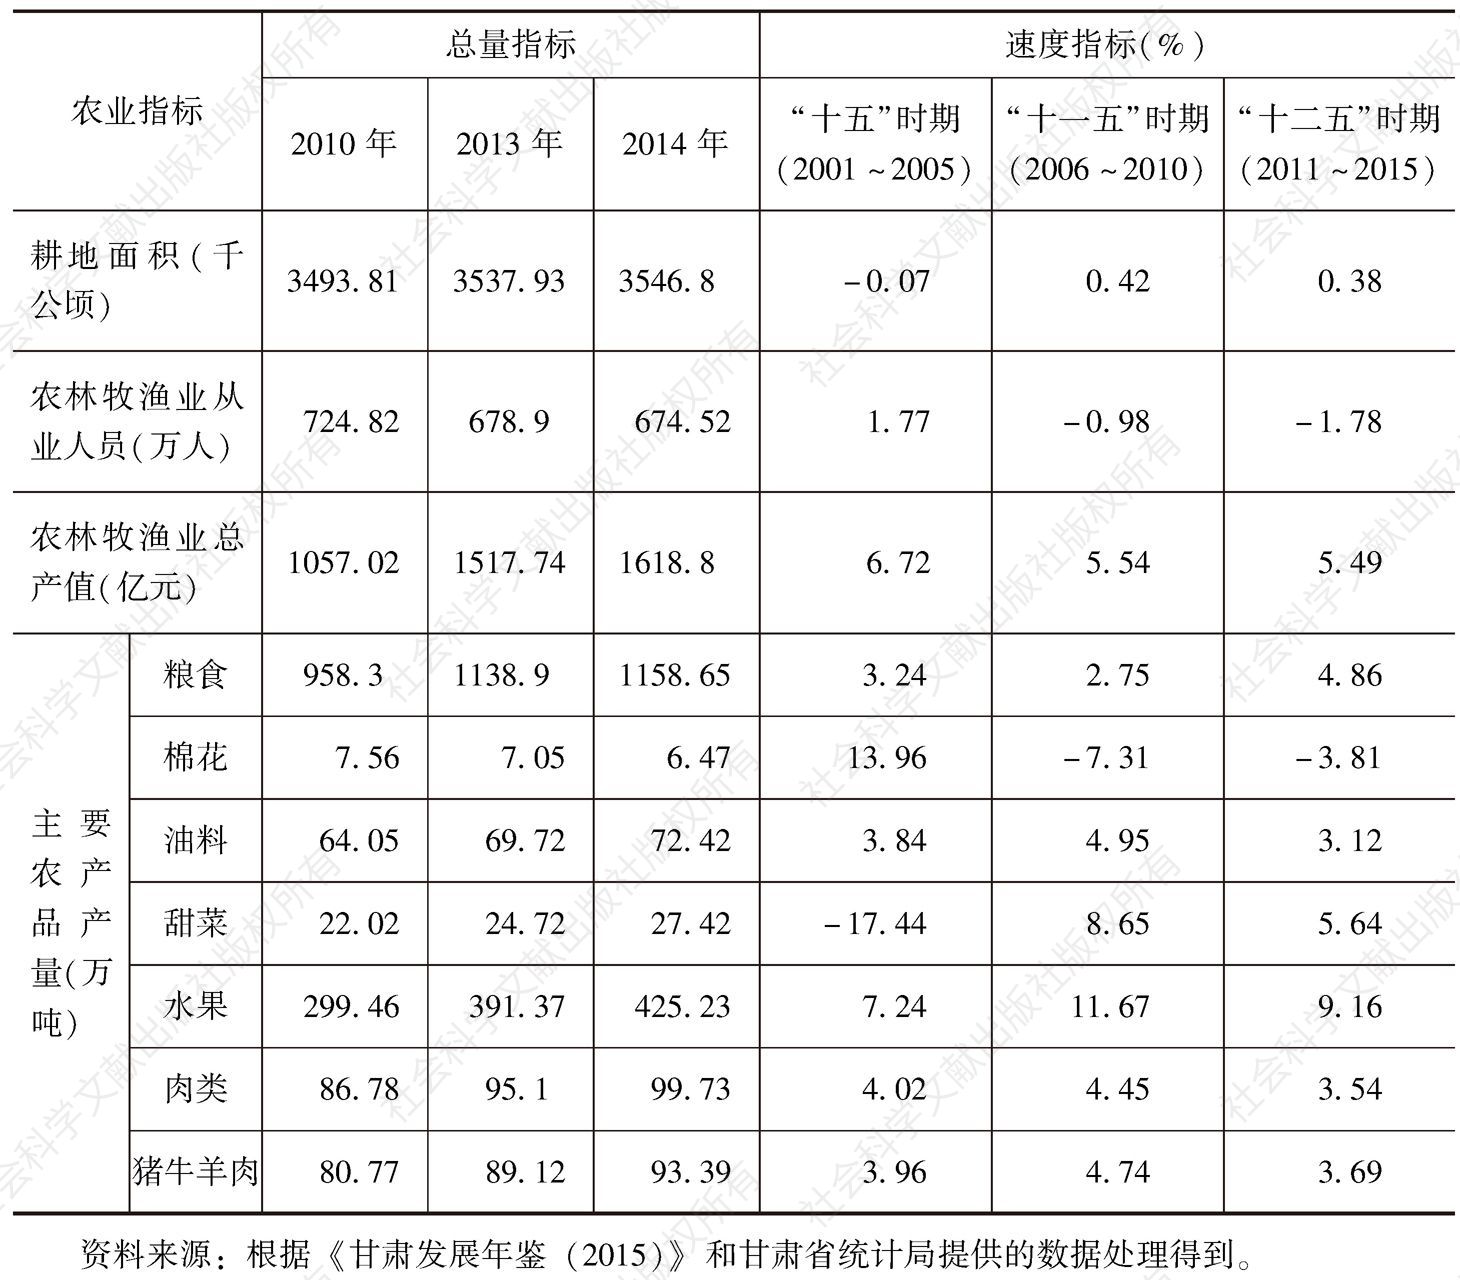 表2 甘肃省农业经济和社会发展总量与速度指标